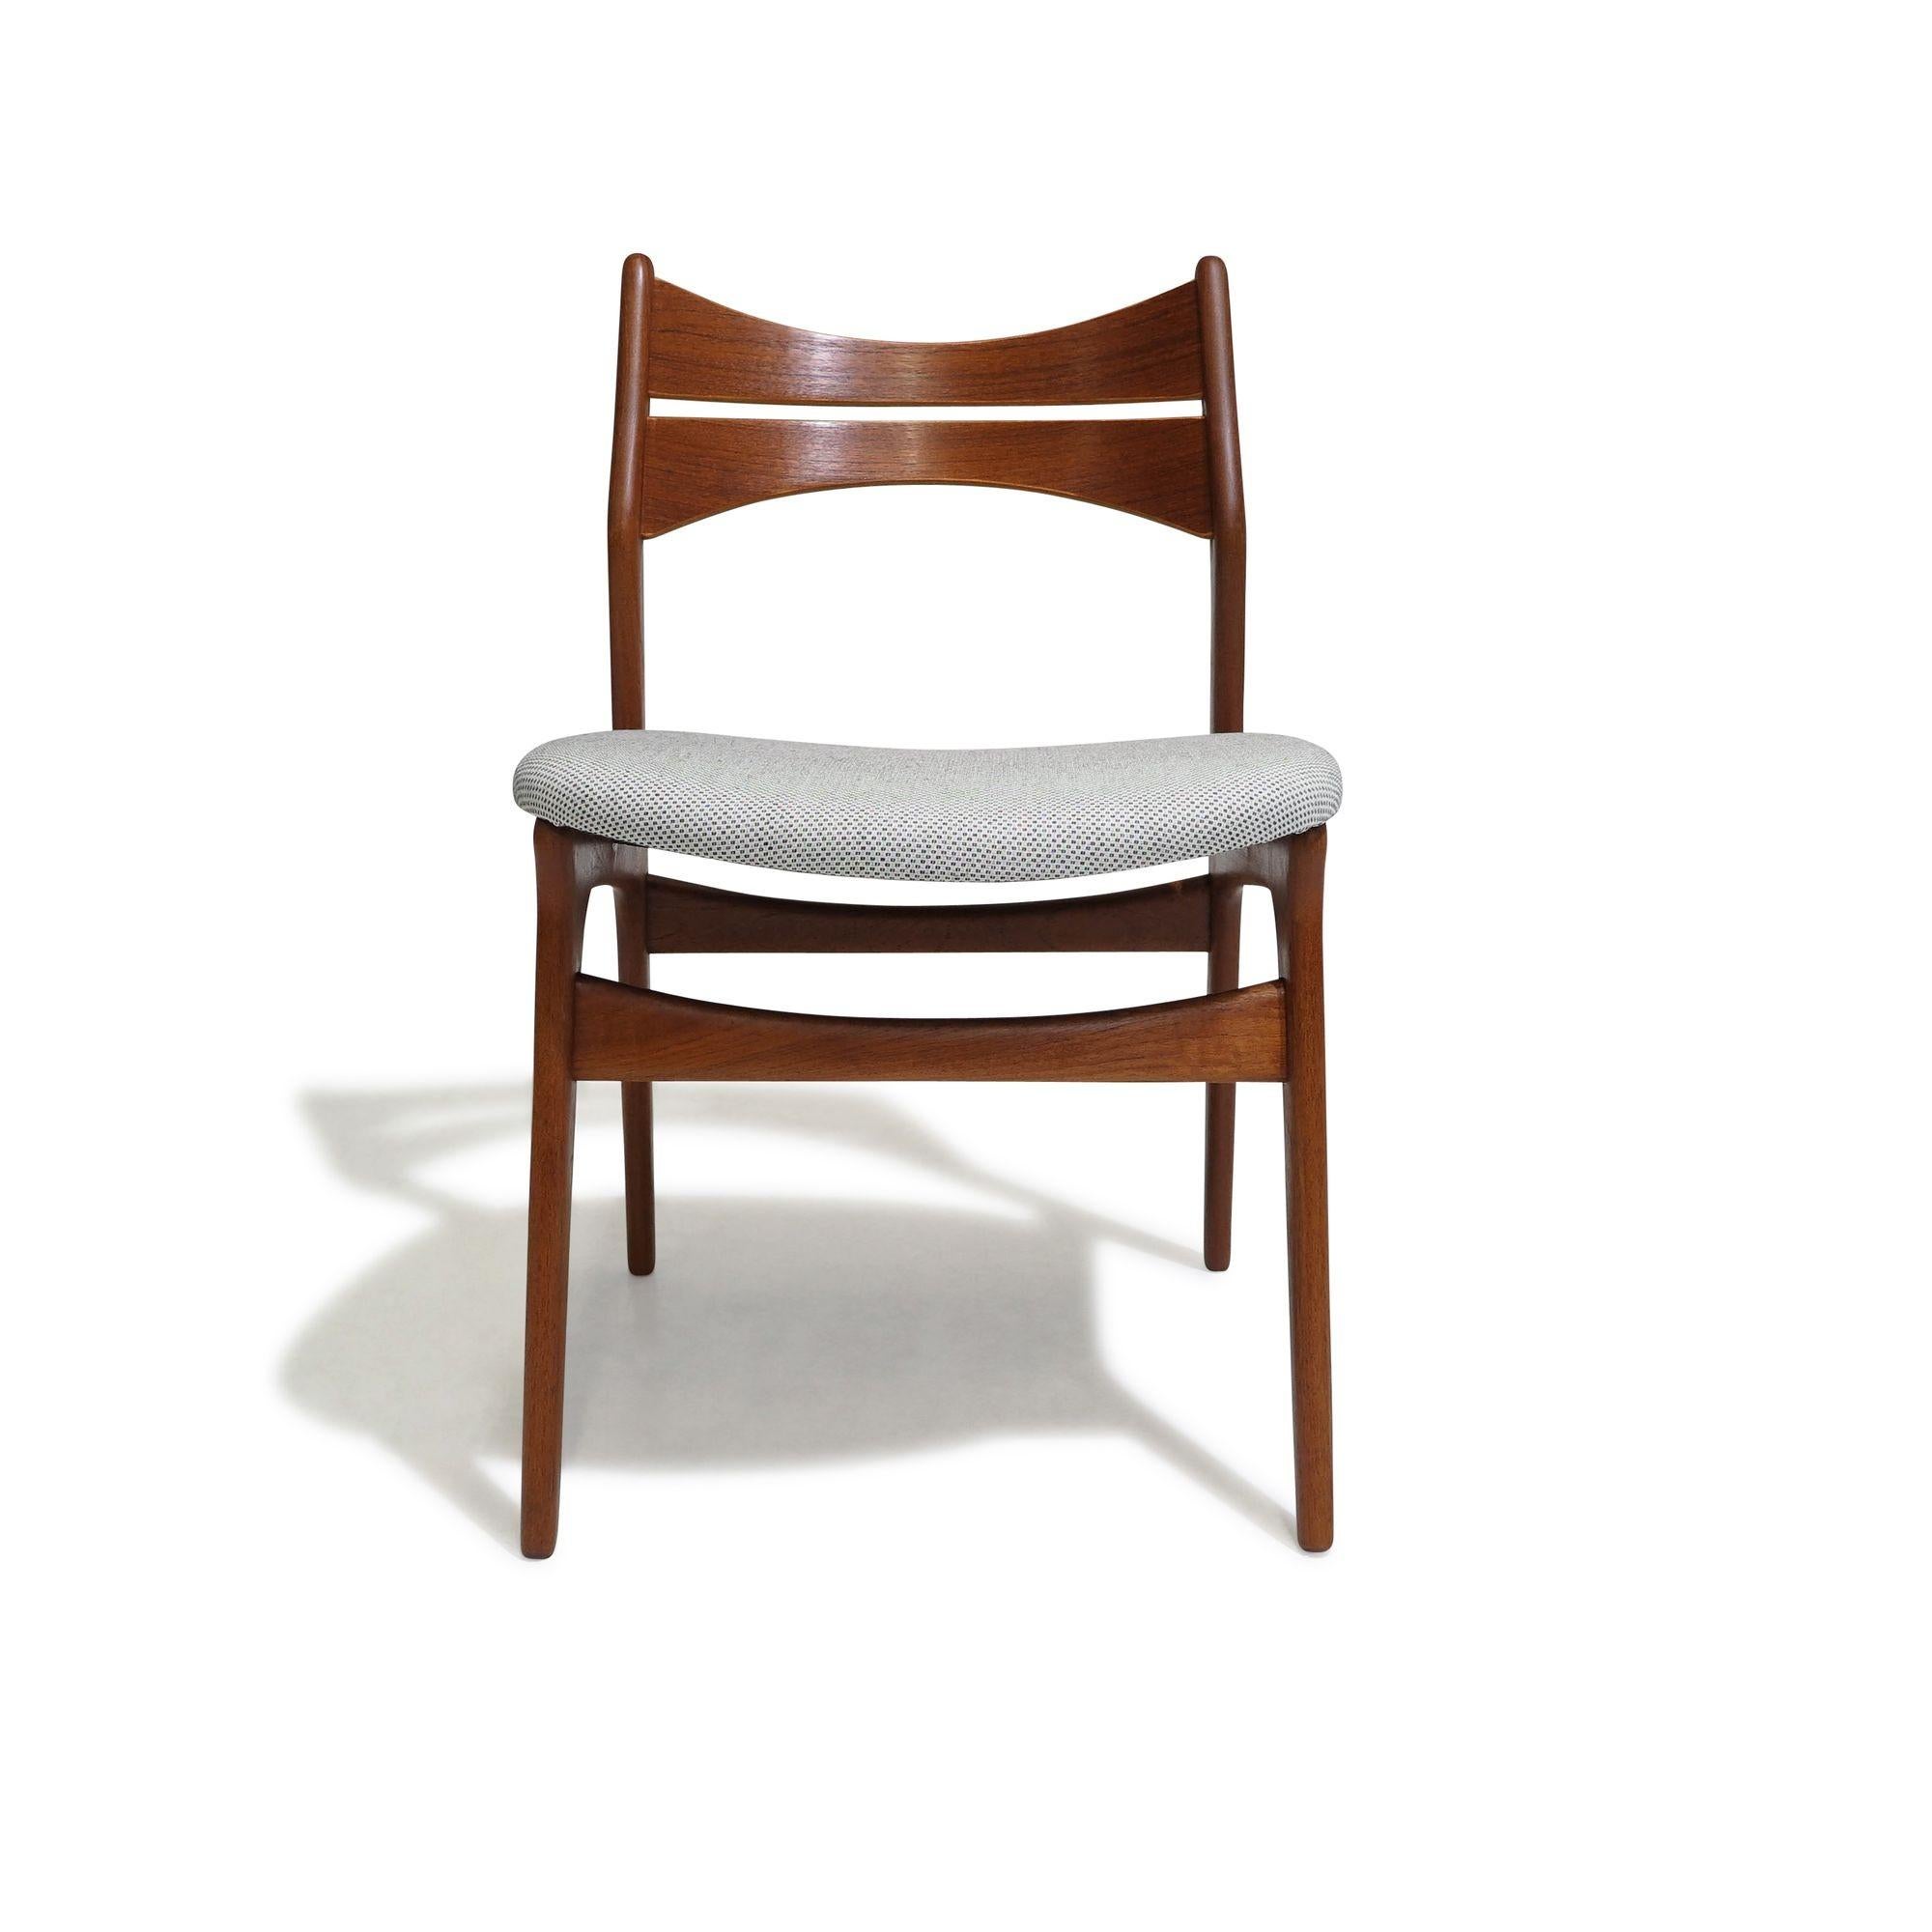 Ensemble de quatre chaises de salle à manger en teck du milieu du siècle dernier, conçues par Erik Buch pour Christensen Denmark, modèle 310. Whiting avec une structure en teck massif et des dossiers angulaires confortables, ces chaises ont des